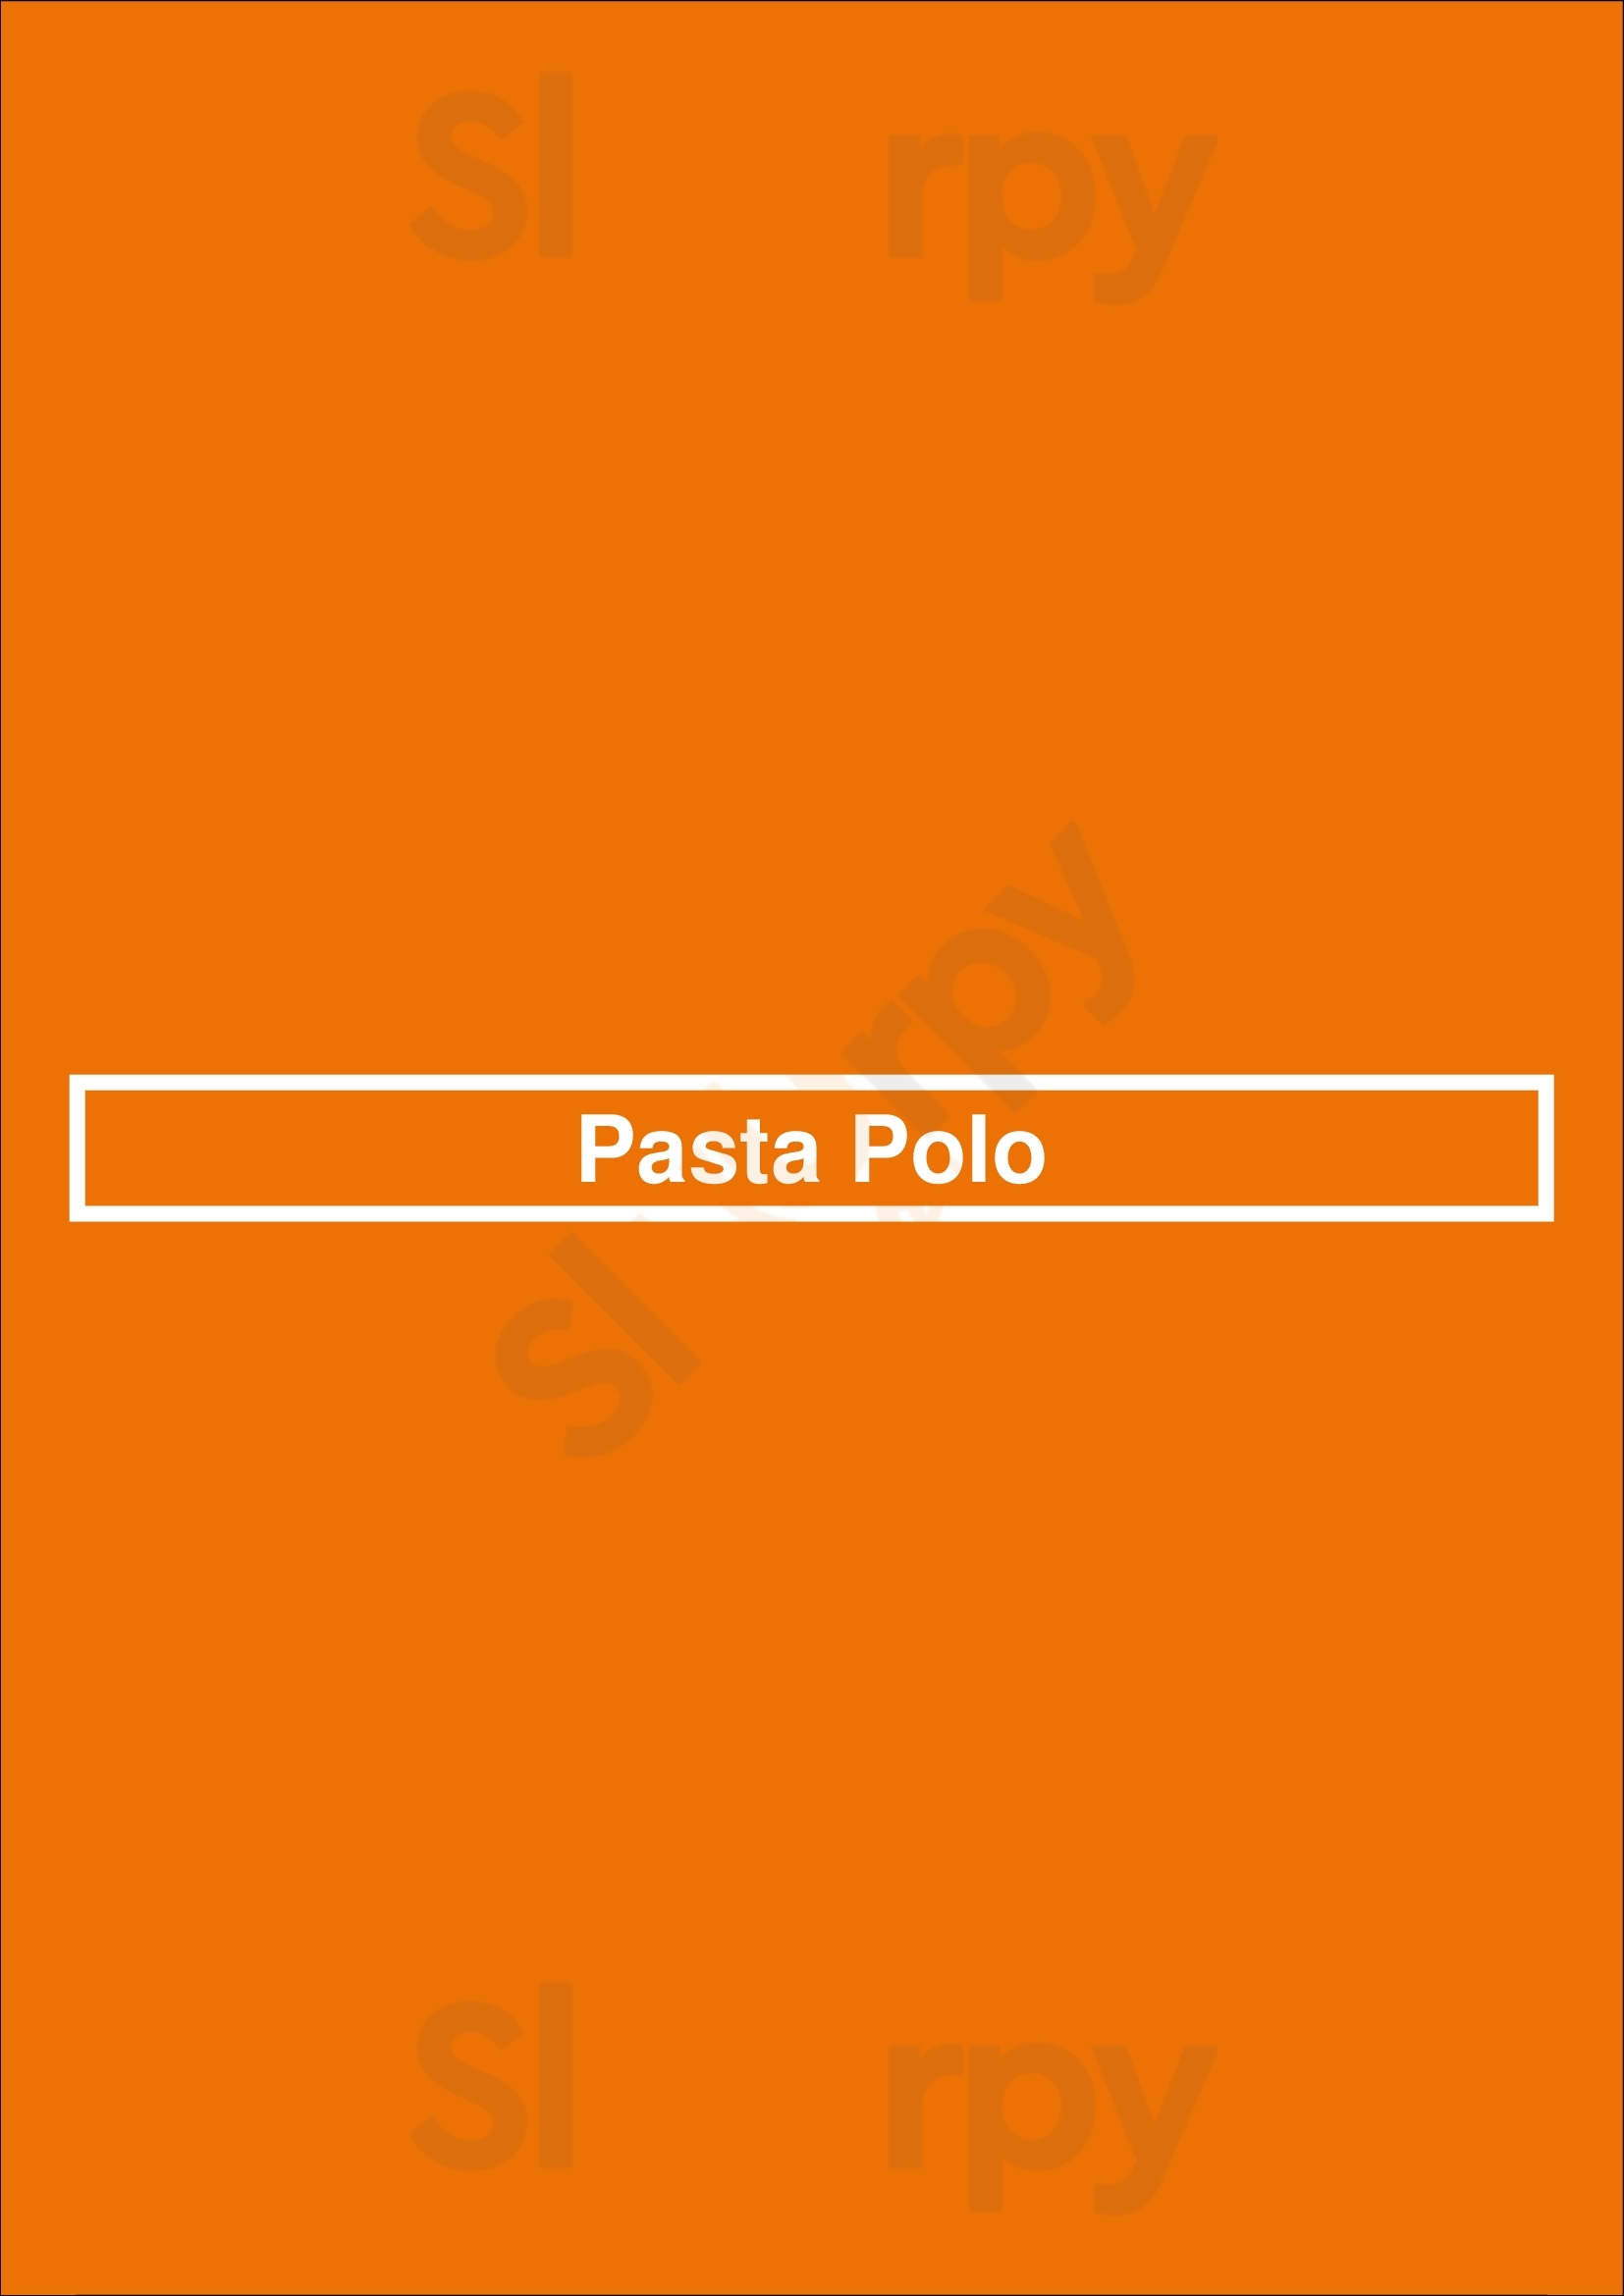 Pasta Polo Coquitlam Menu - 1